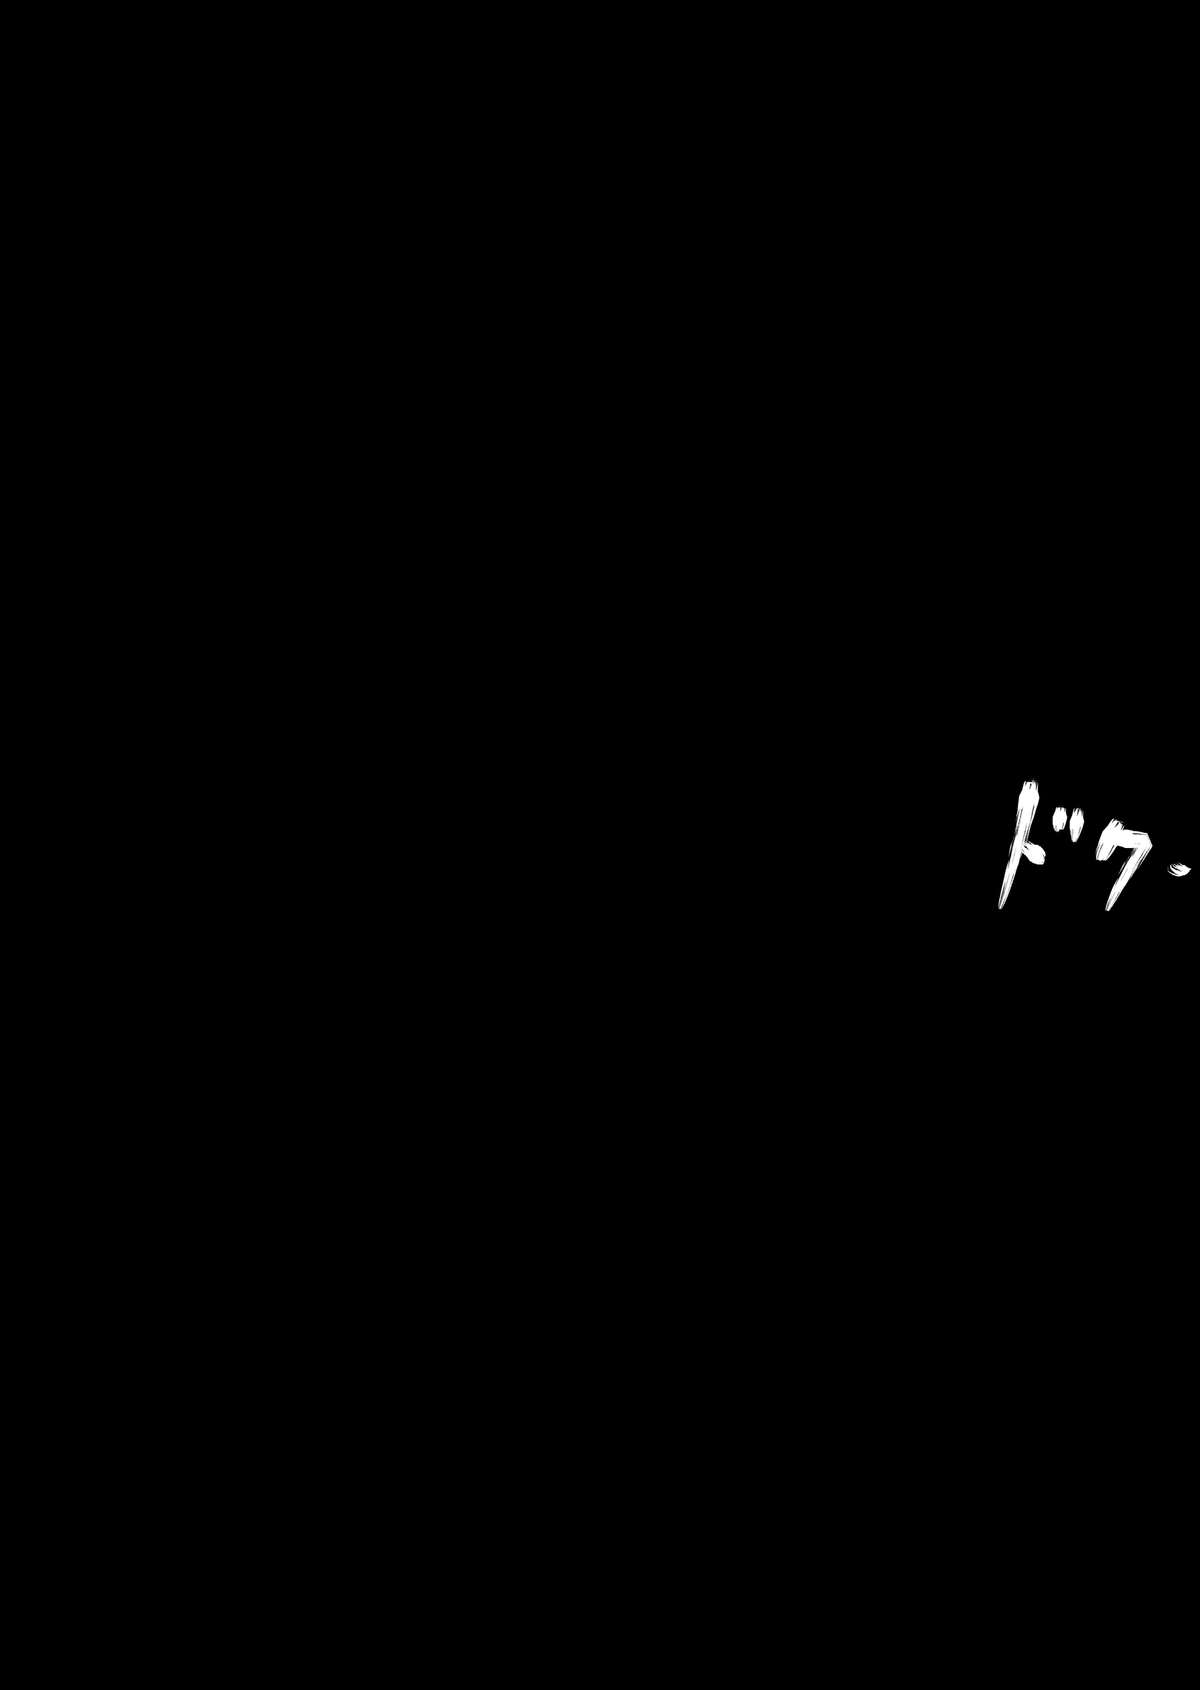 【マックス（モンモン）】徳房戦隊ディナレンジャーVol.17 / 18【英語】【サハ】【デジタル】